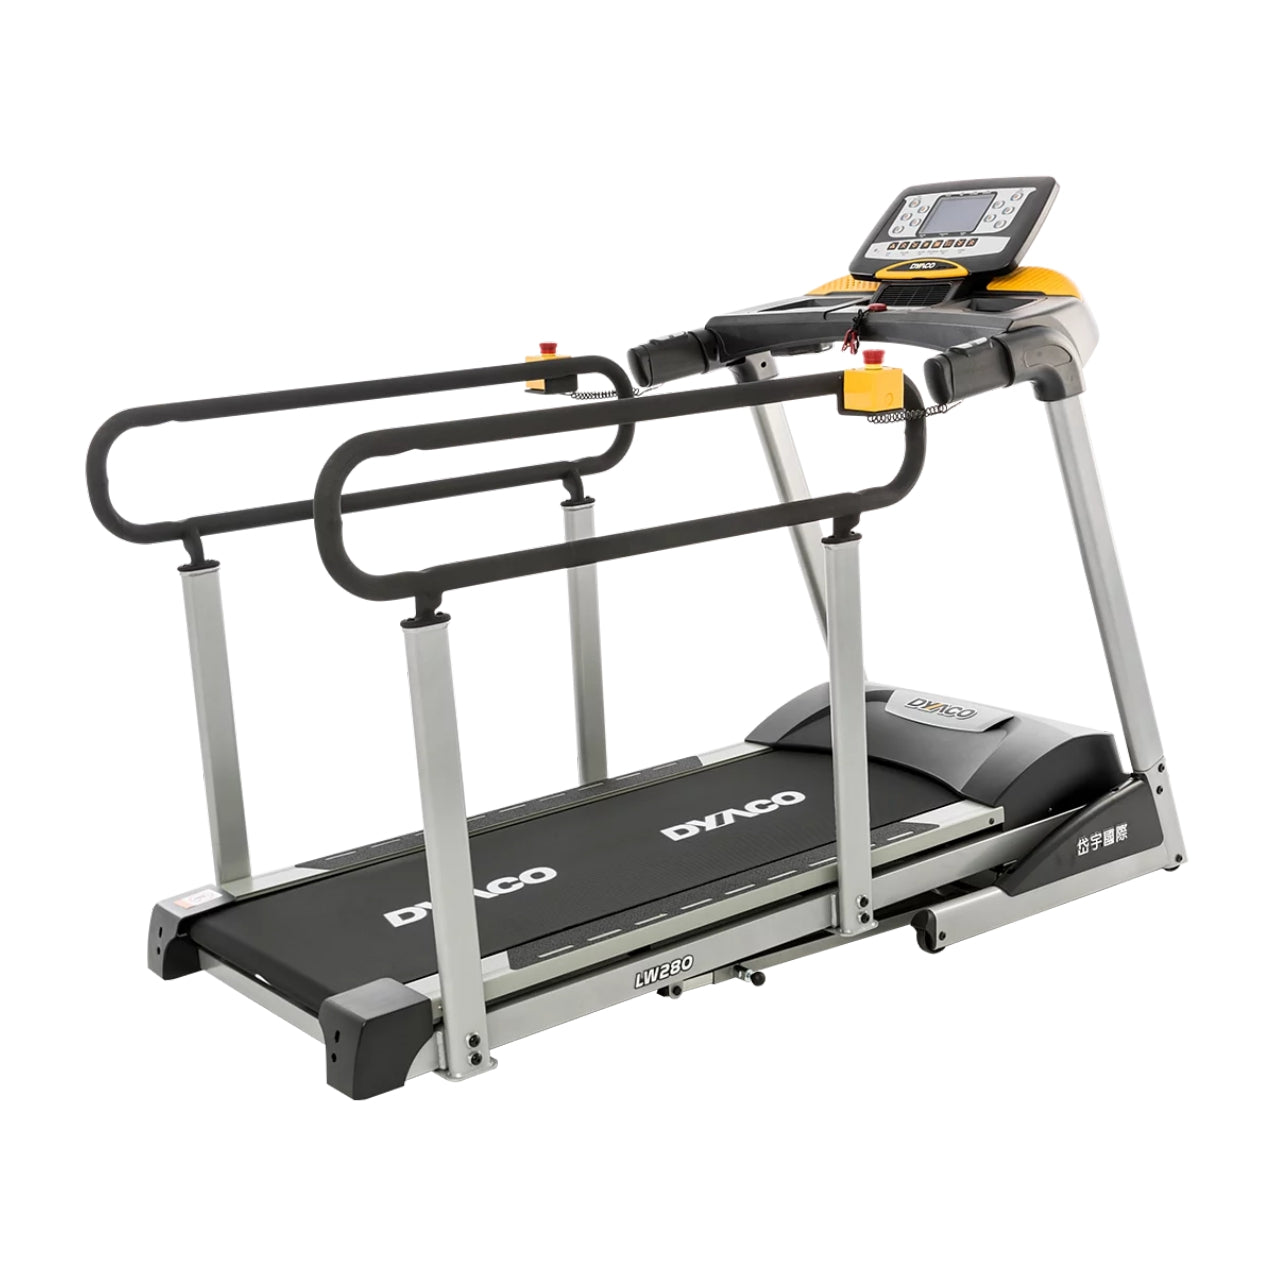 Dyaco LW280 Treadmill